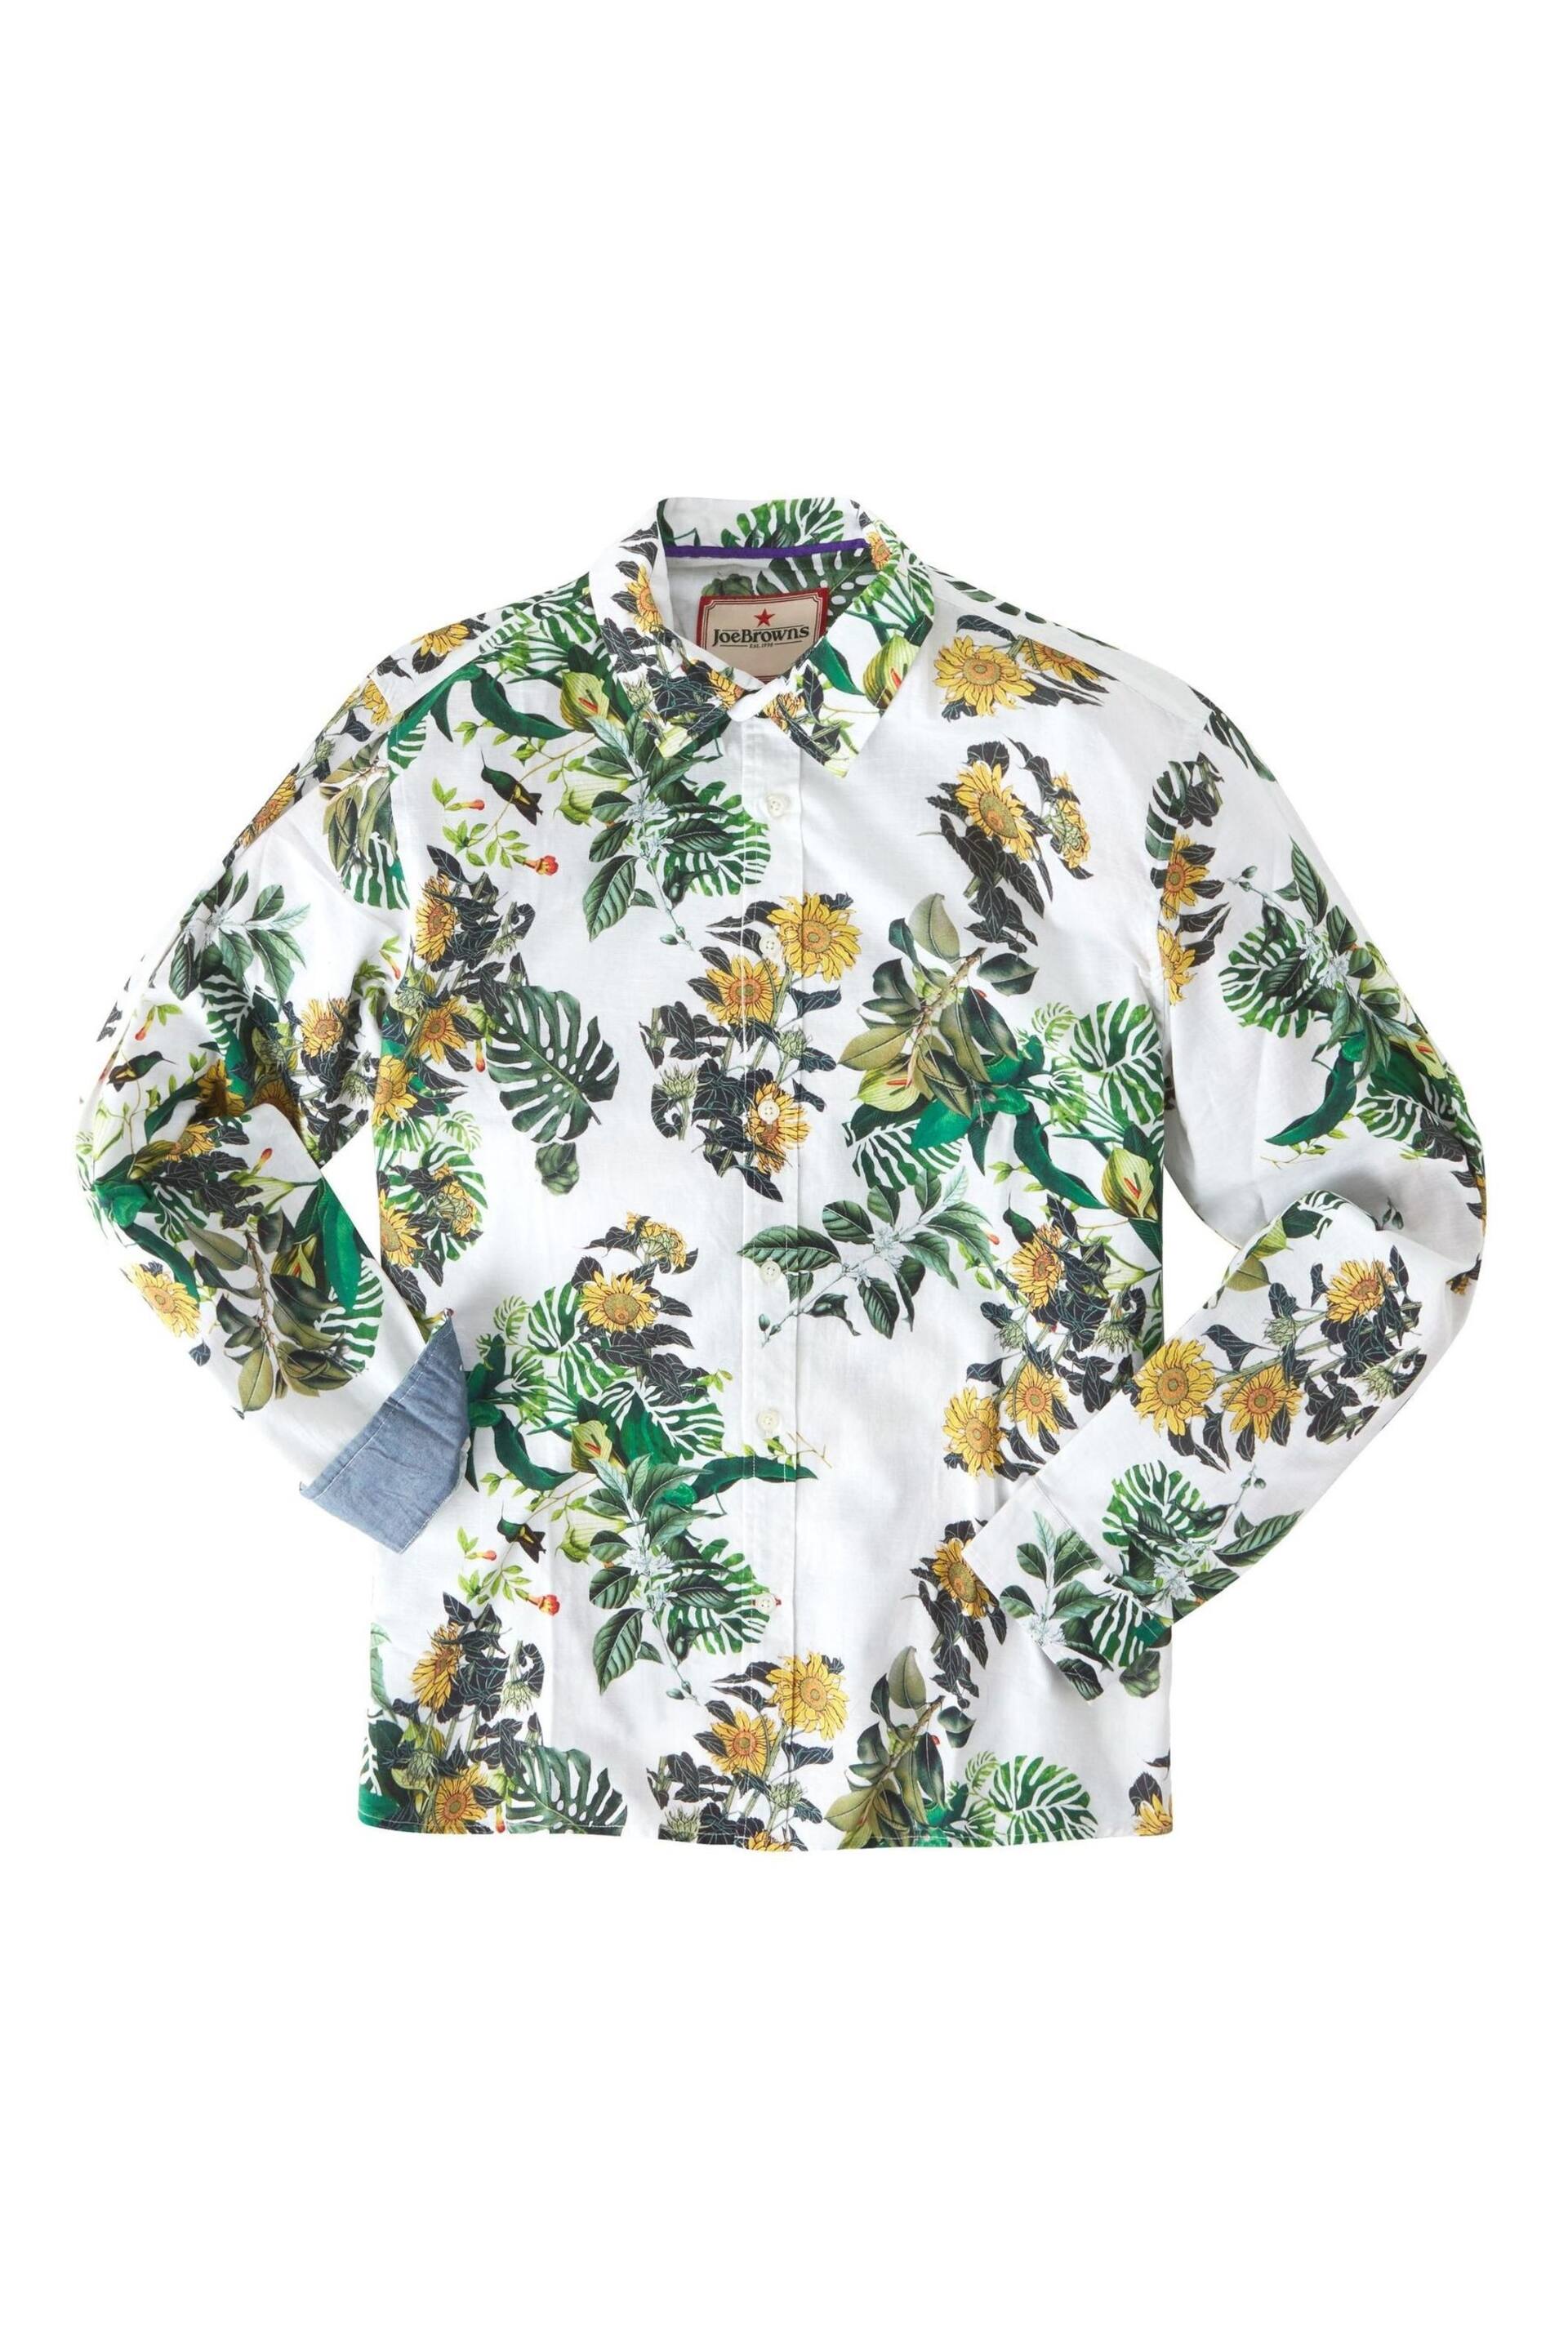 Joe Browns White Sunflower Print Shirt - Image 5 of 6